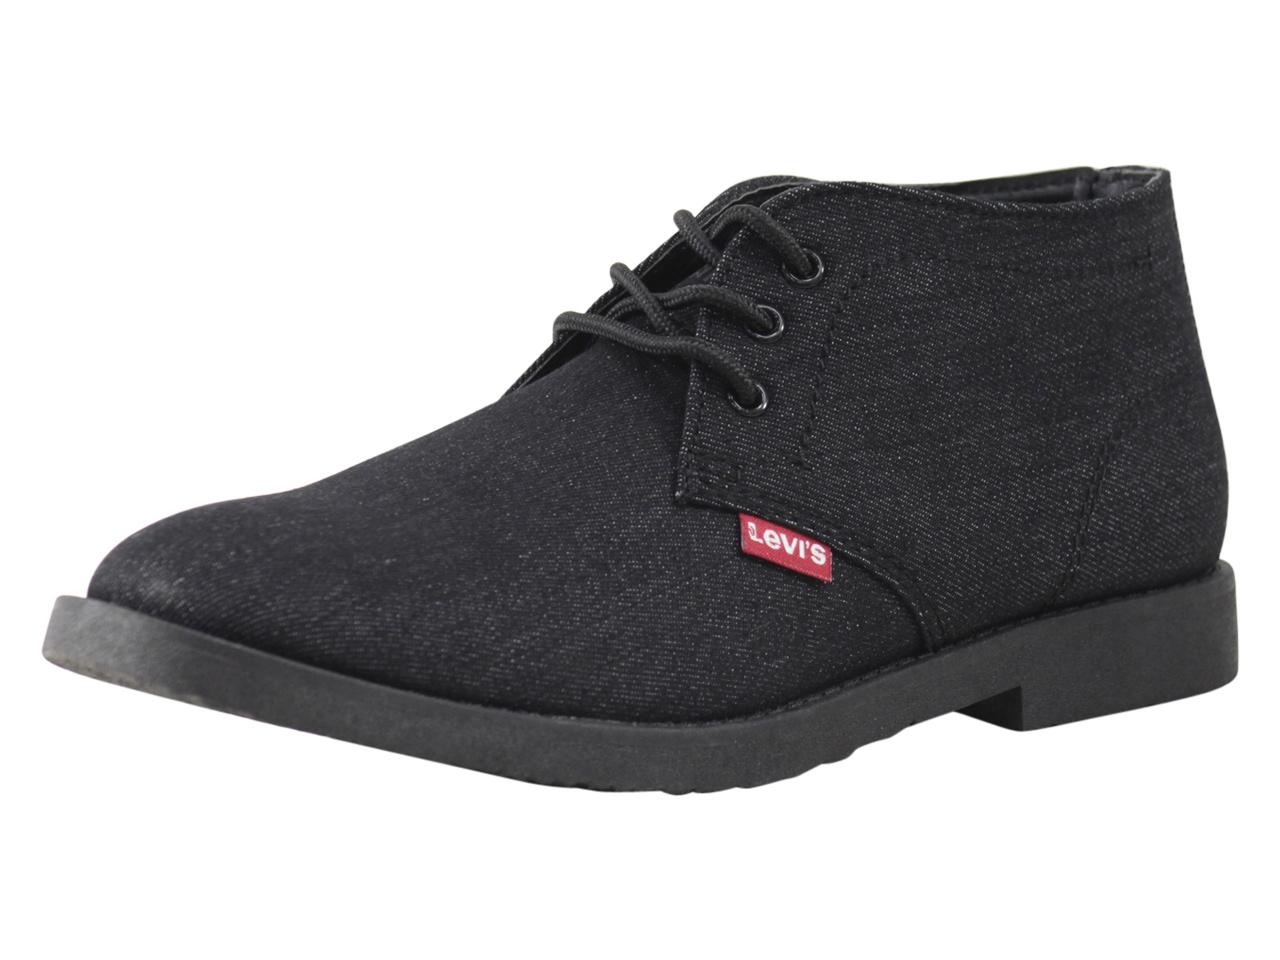 Levi's Men's Sonoma Denim Levis Chukka Boots Shoes 